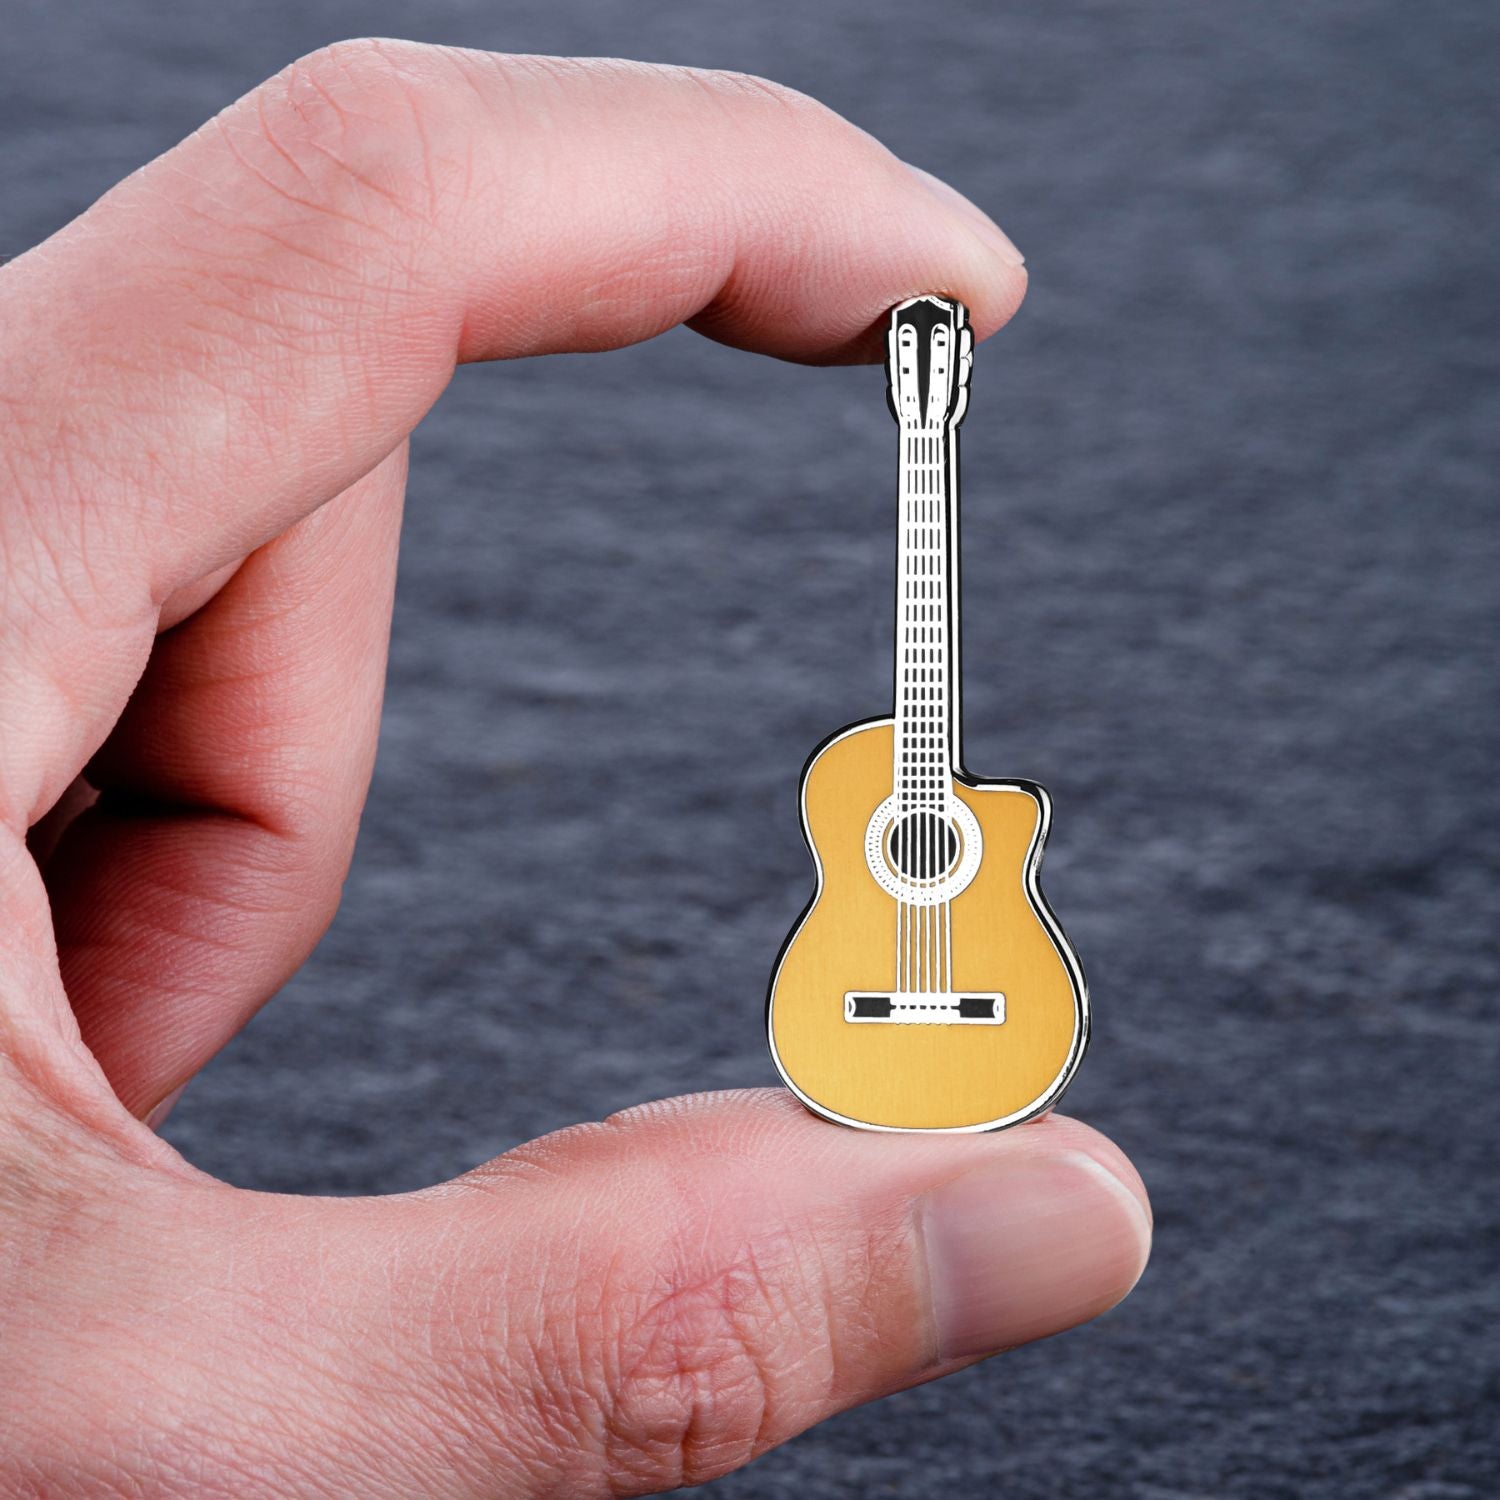 Geepin Cordoba Classical Guitar Pin